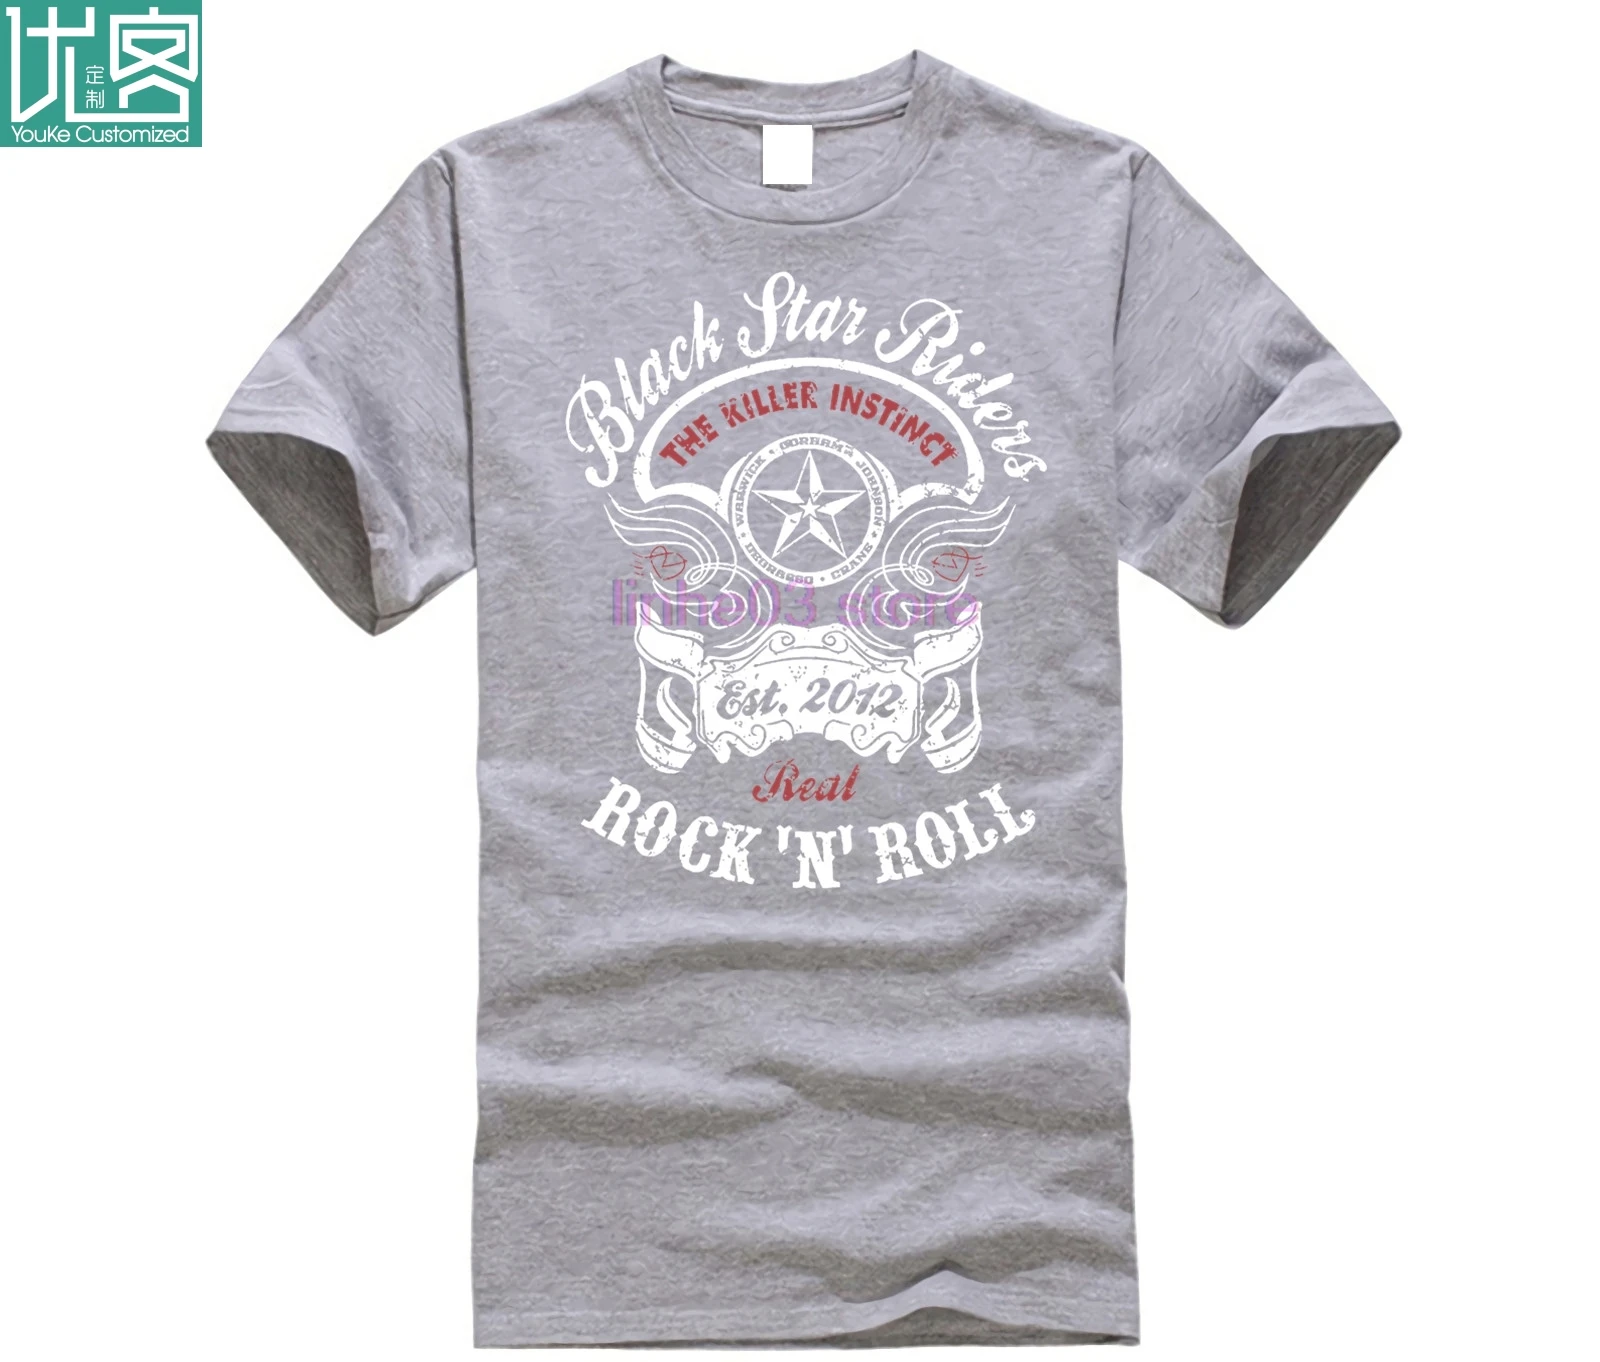 Camisetas divertidas Black Star Riders 'rock N roll' t-mierda Mens Impreso Tops Camisetas Streetwear Camiseta de Moda 0